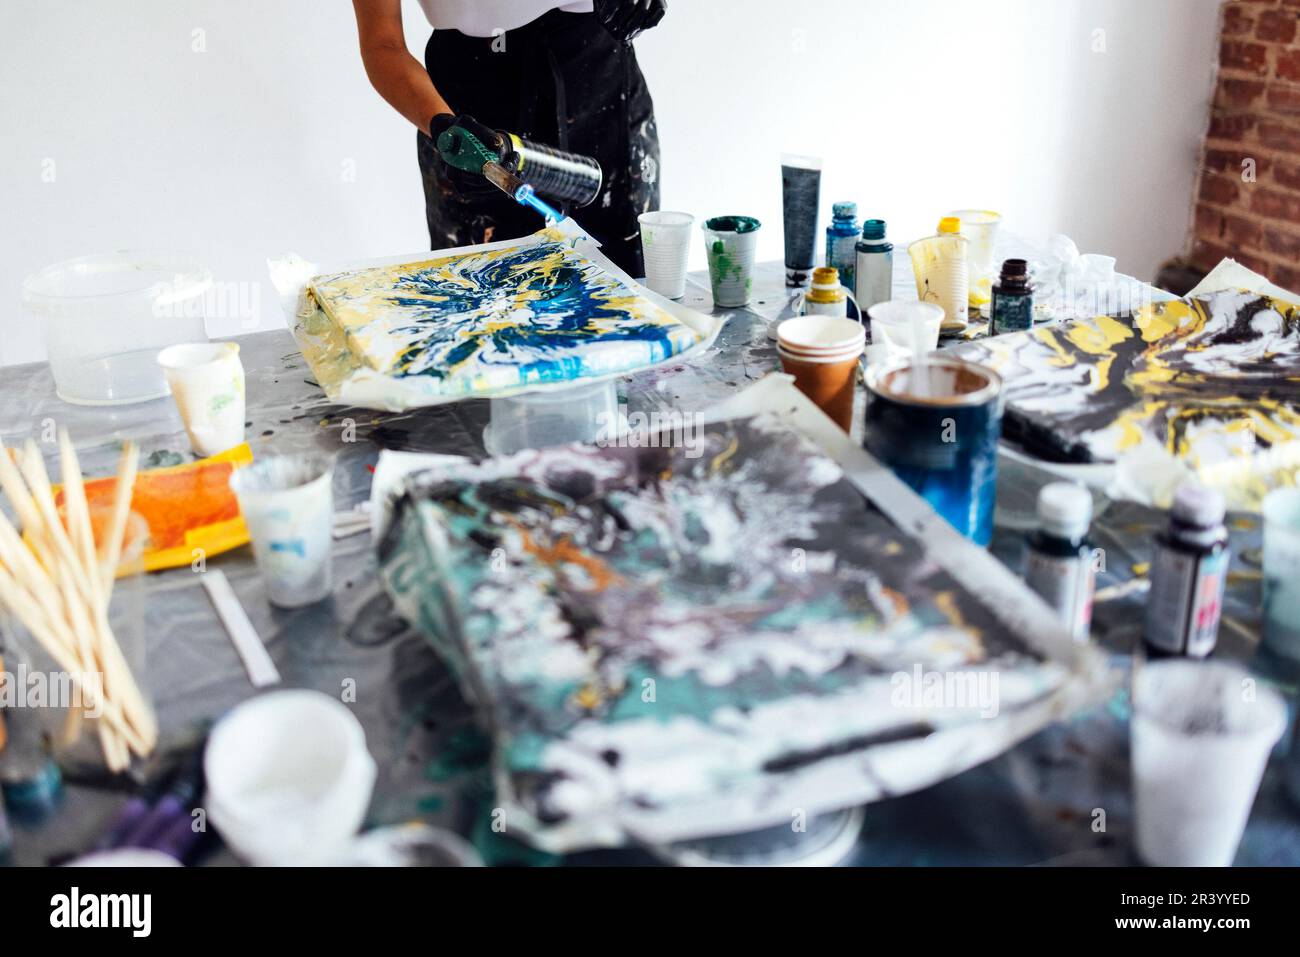 Donna utilizza un bruciatore a gas per disegnare in fluido Art. Processo di creazione di una pittura con vernici acriliche liquide. Foto Stock